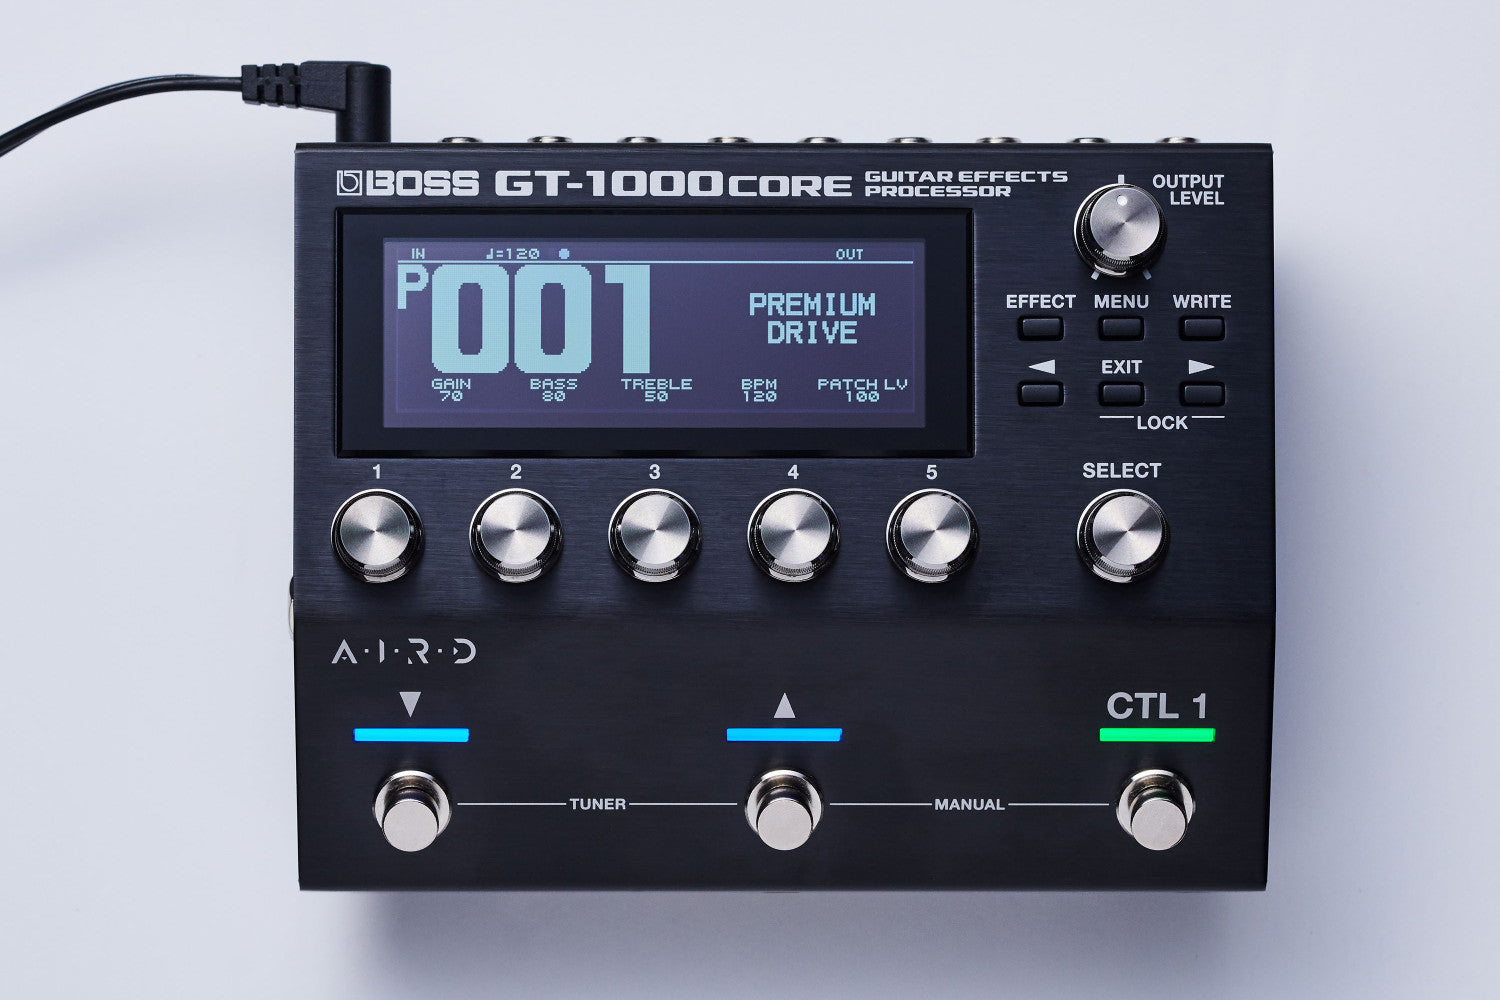 BOSS GT-1000CORE Multi-Effects Processor Black